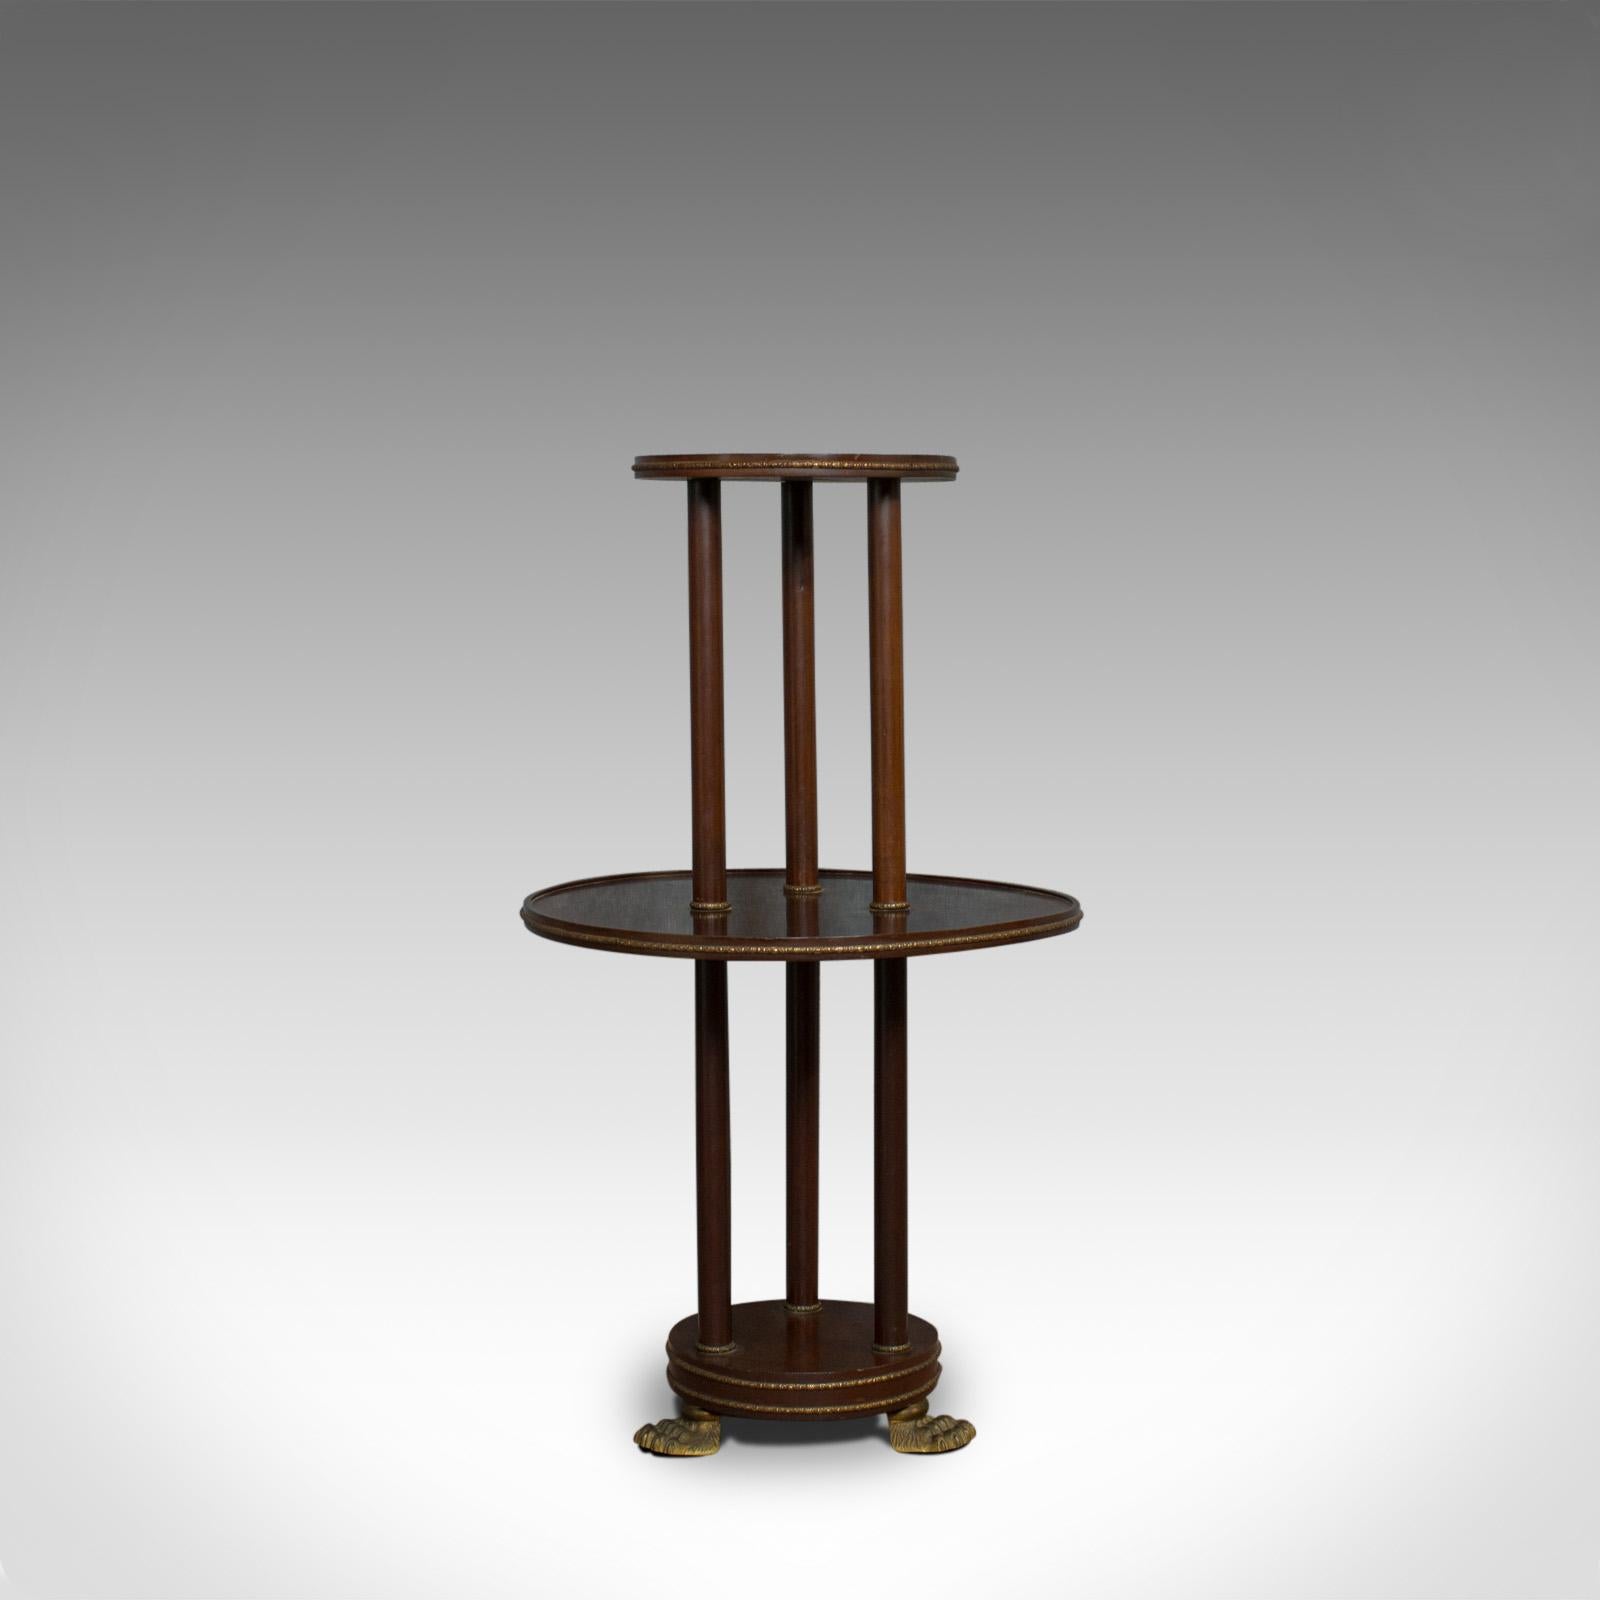 Dies ist ein antiker stummer Kellner. Ein englischer, viktorianischer Stufentisch aus Mahagoni im Empire-Stil aus dem späten 19. Jahrhundert, um 1880.

Reichhaltiges Mahagoni in rostroten Farbtönen mit begehrter Alterspatina
Detaillierte